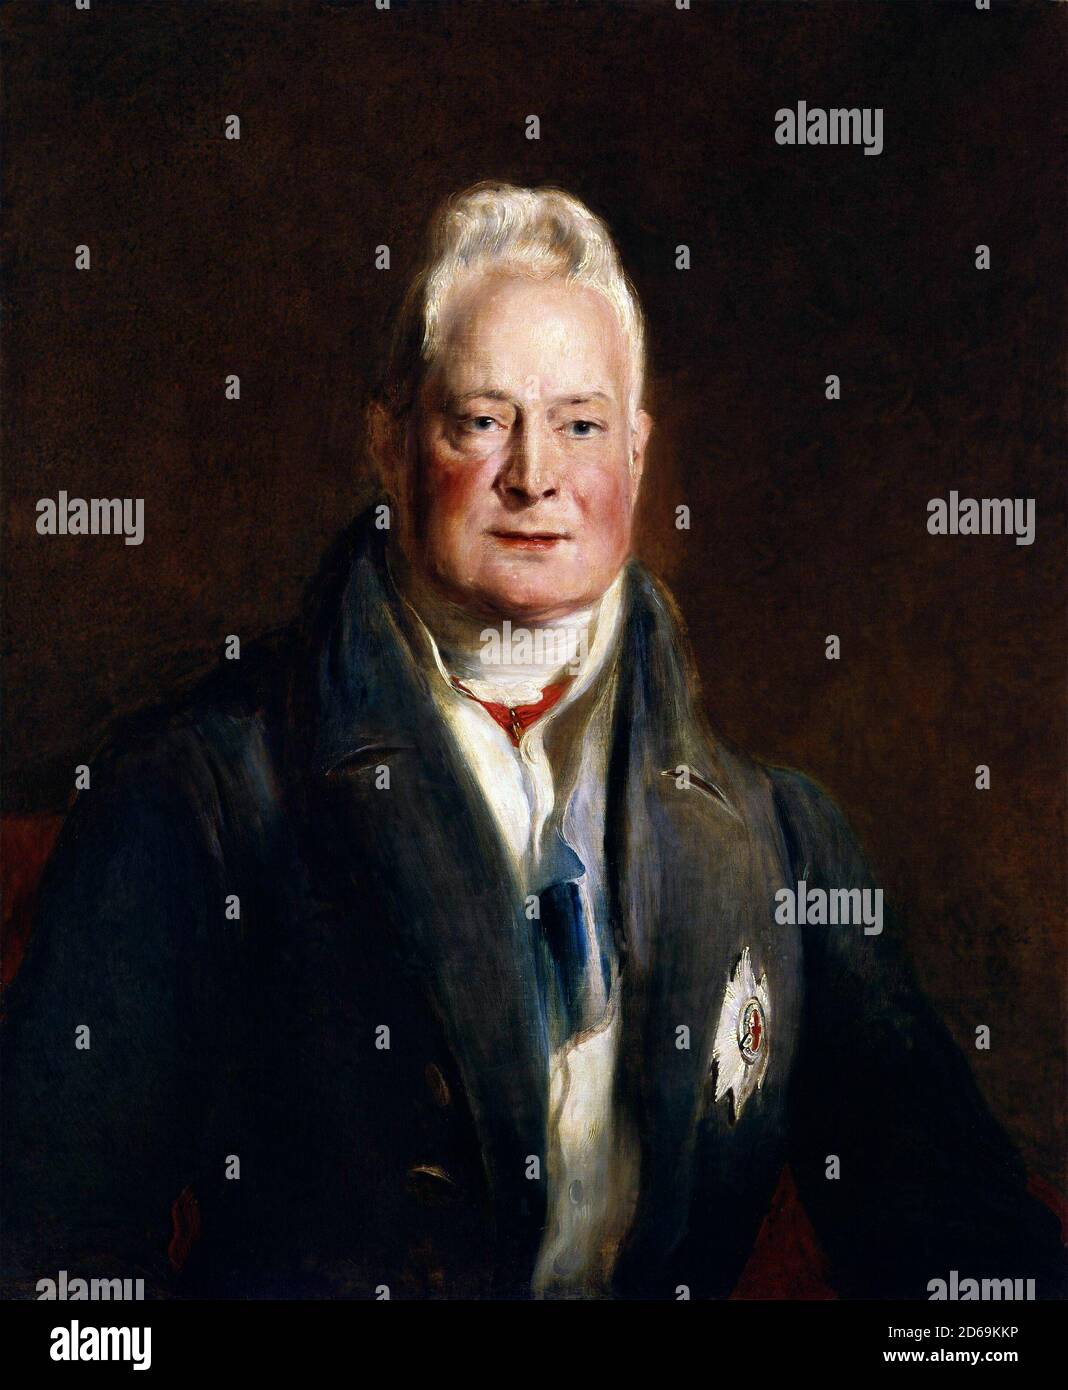 William IV Porträt von König Wilhelm IV. (William Henry; 1765-1837) von David Wilkie, Öl auf Leinwand, um 1837. Stockfoto